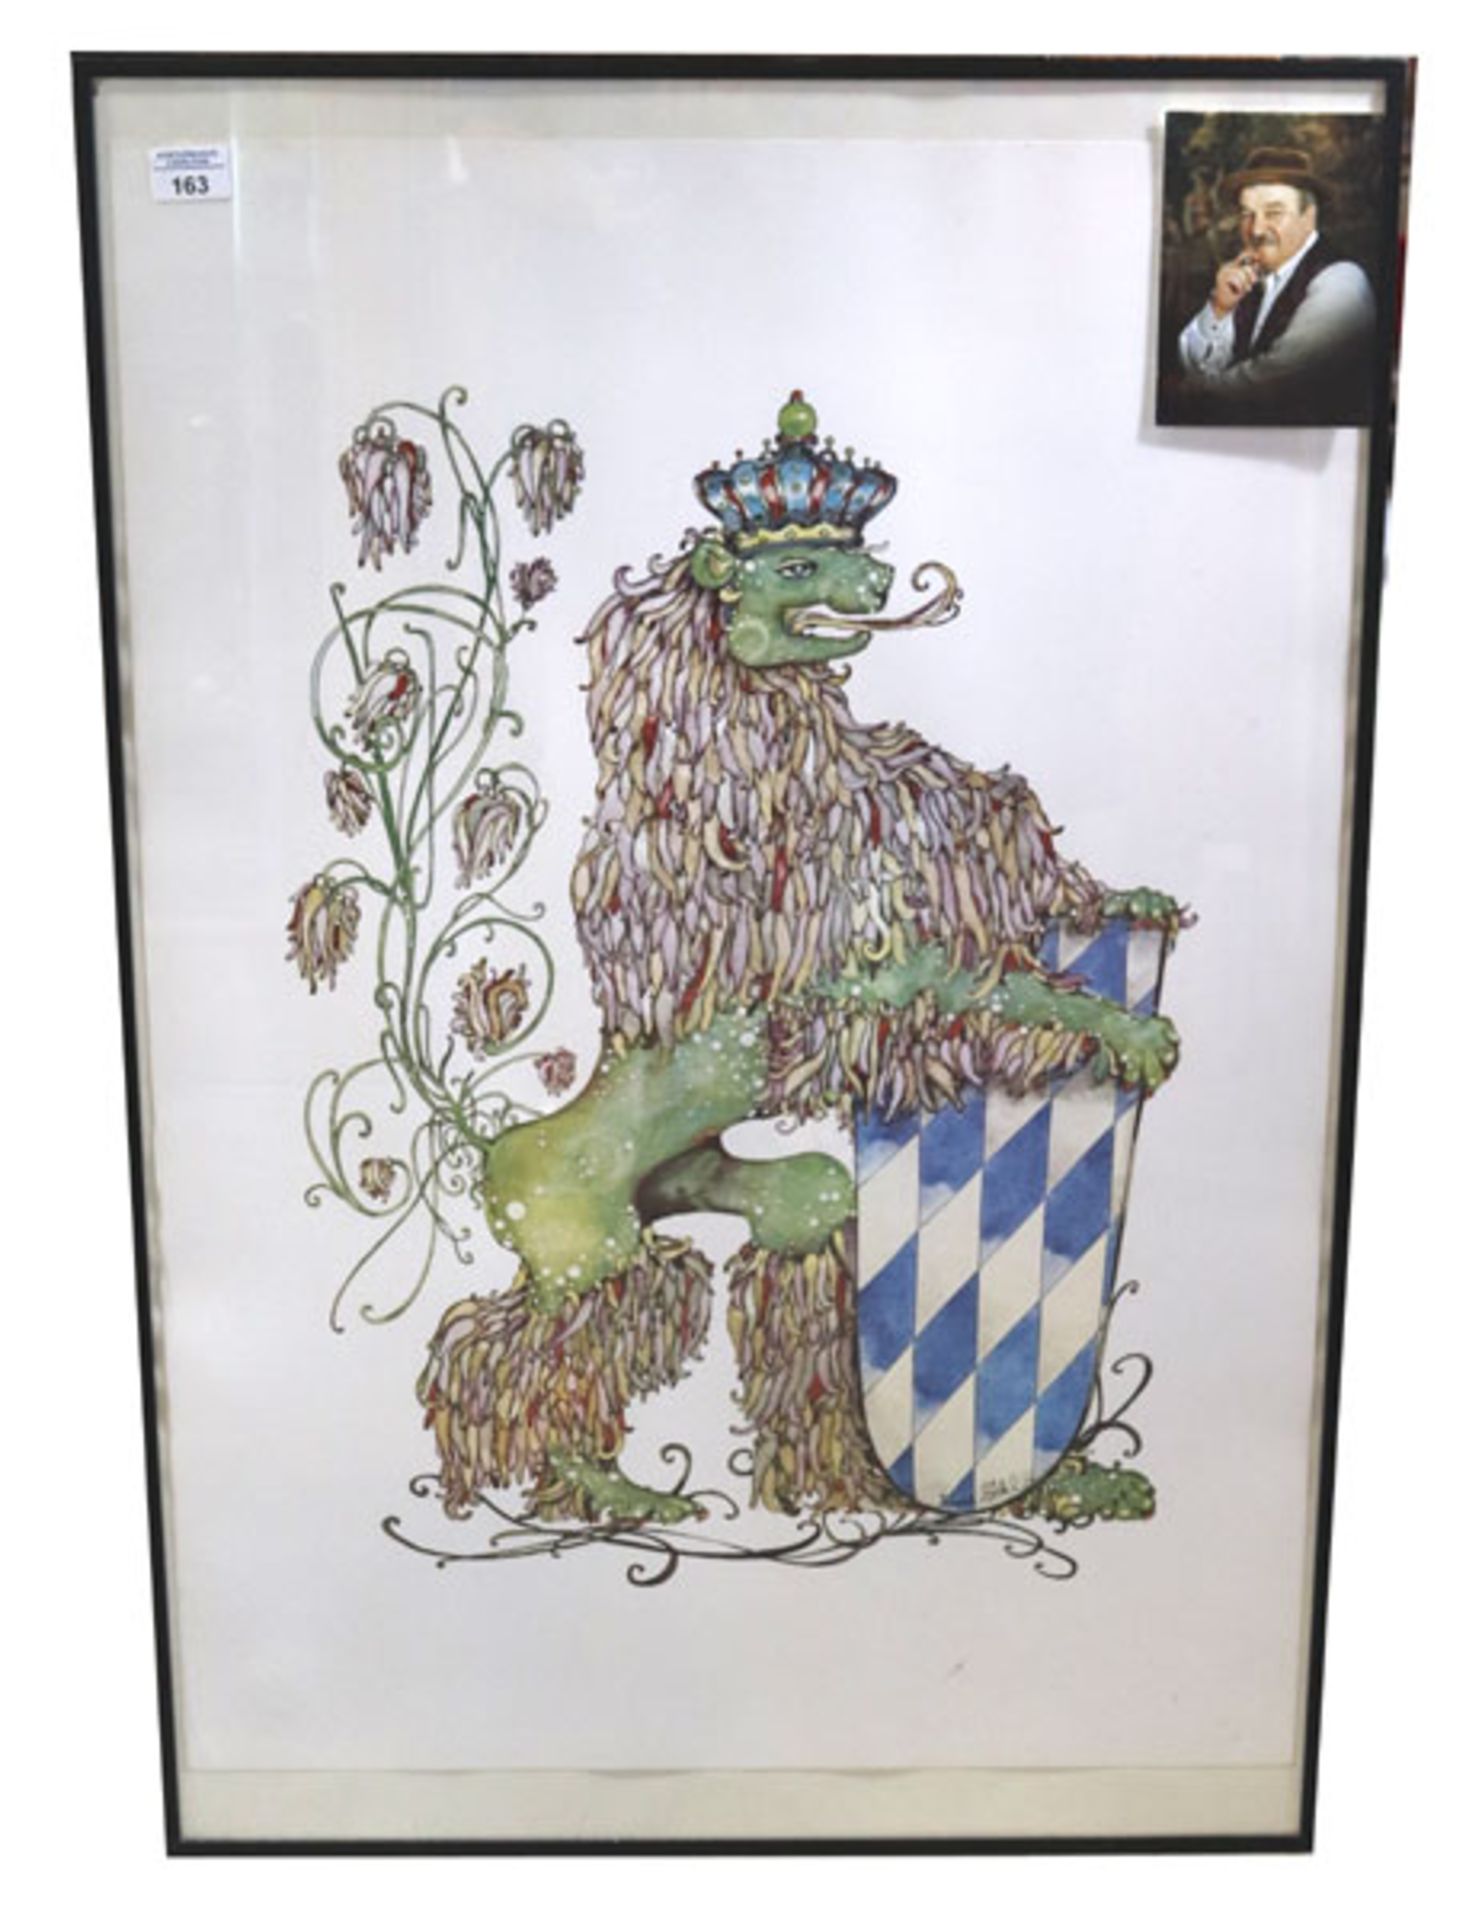 Offsetdruck 'Bayerischer Löwe', von Rupert Stöckl, * 1923 München + 1999 München, unter Glas